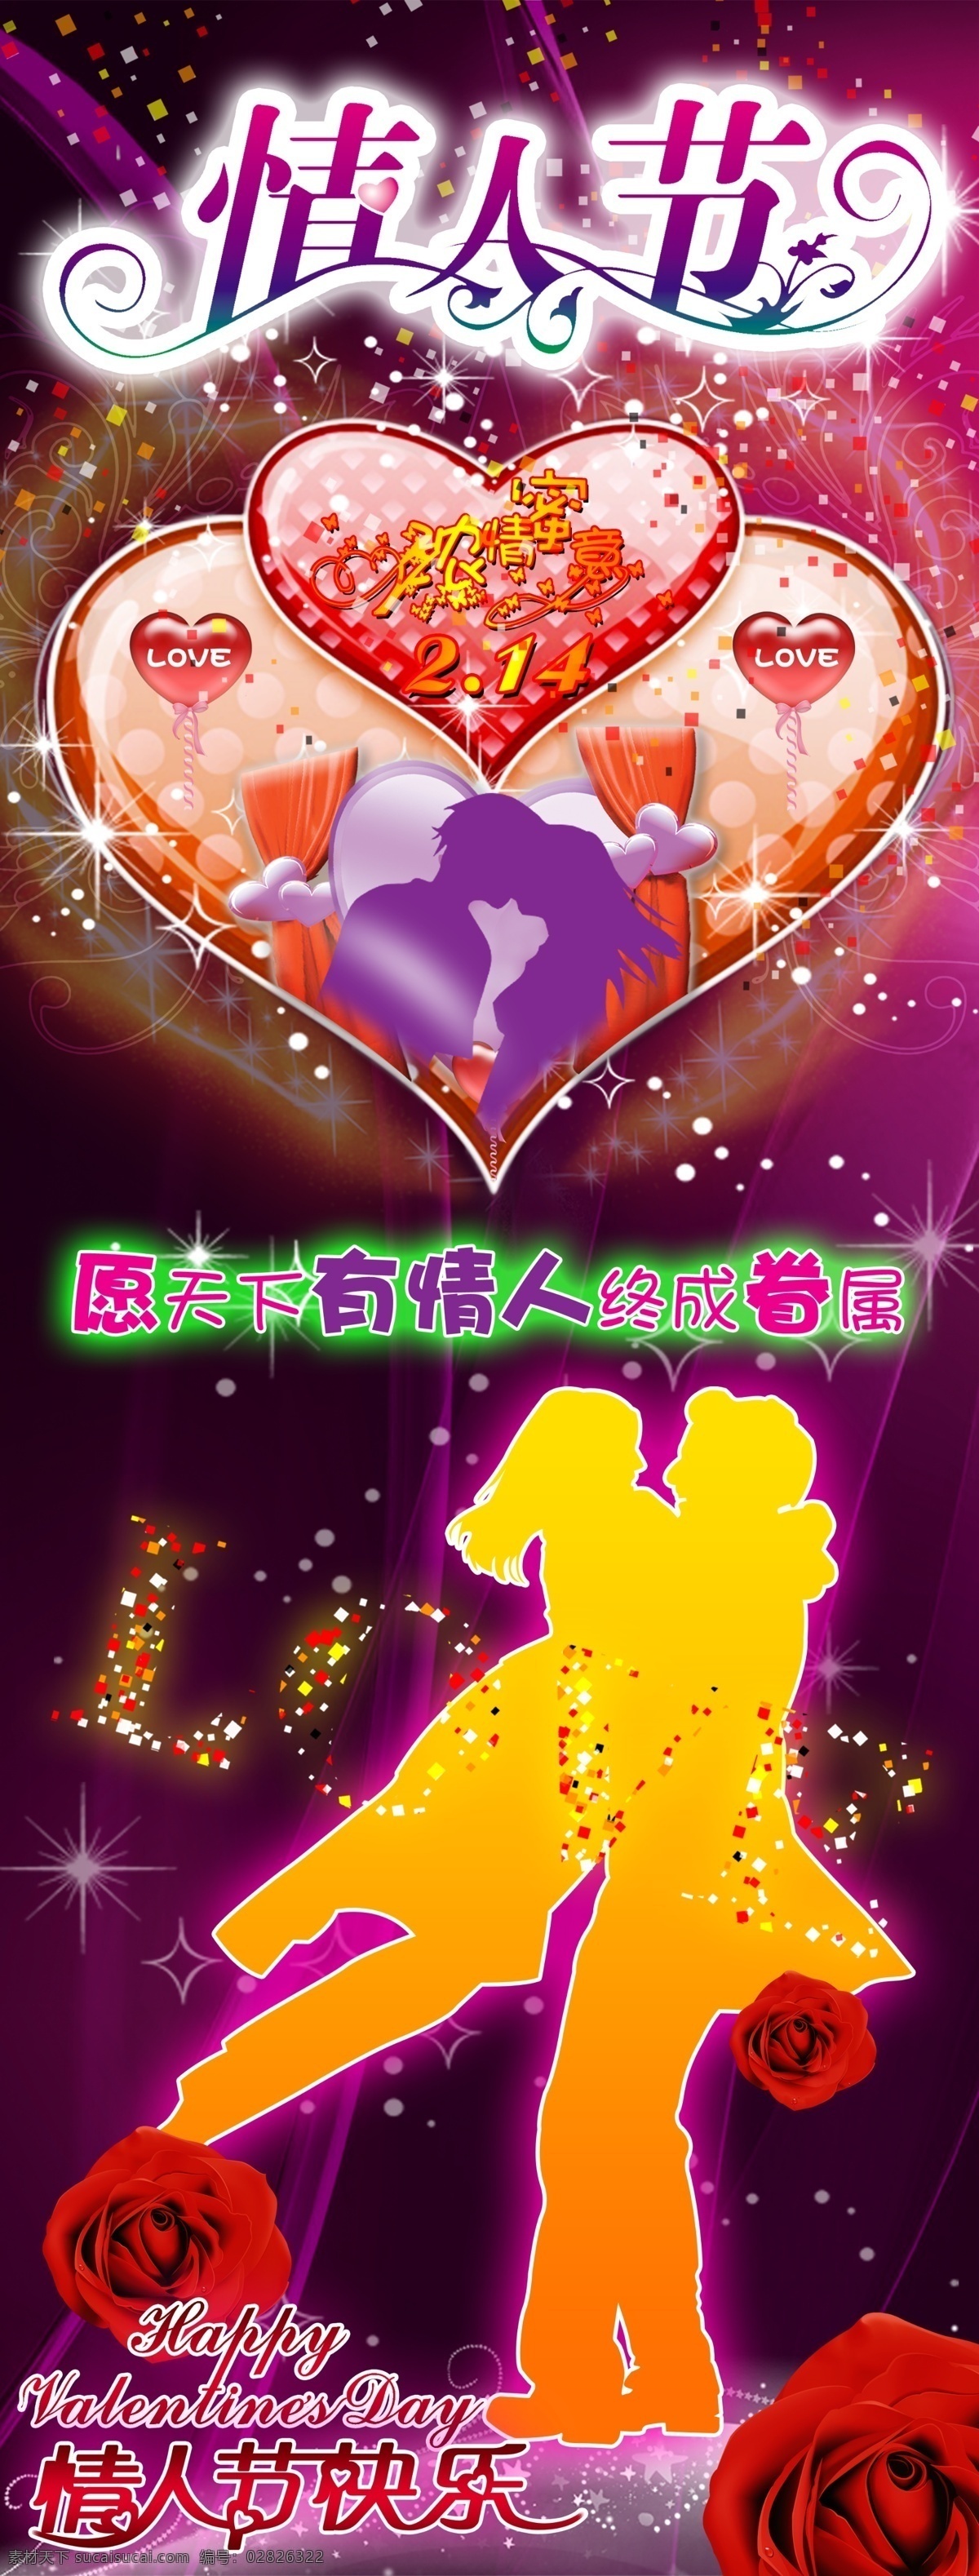 情人节 展板 玫瑰花 情人节海报 情人节素材 宣传单 元素 其他海报设计